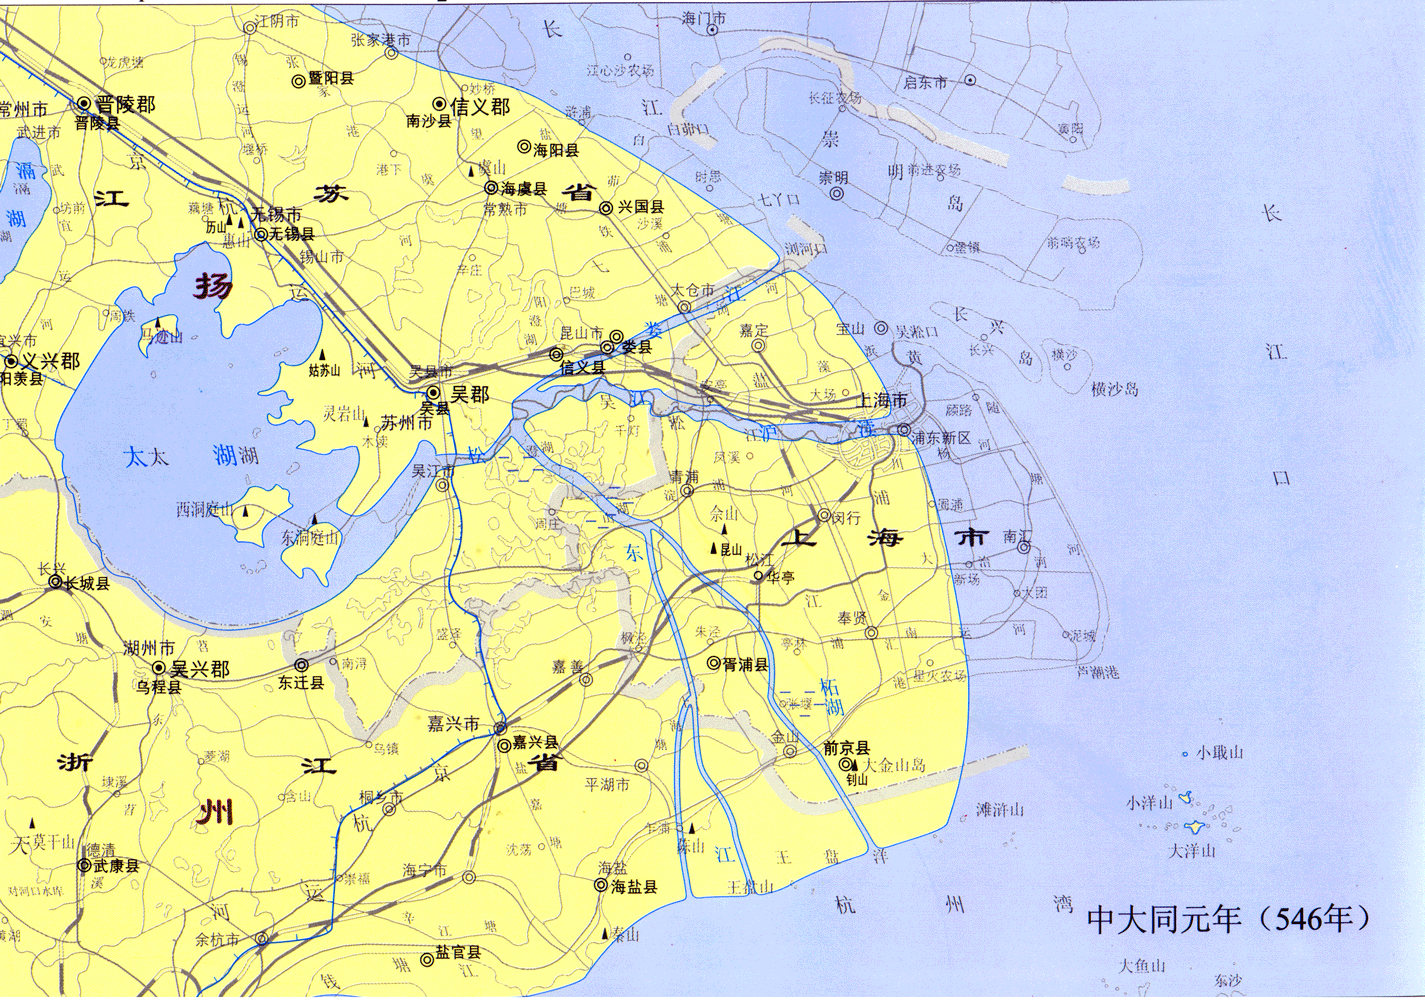 上海历史地图南朝梁时期——中大同元年上海地图